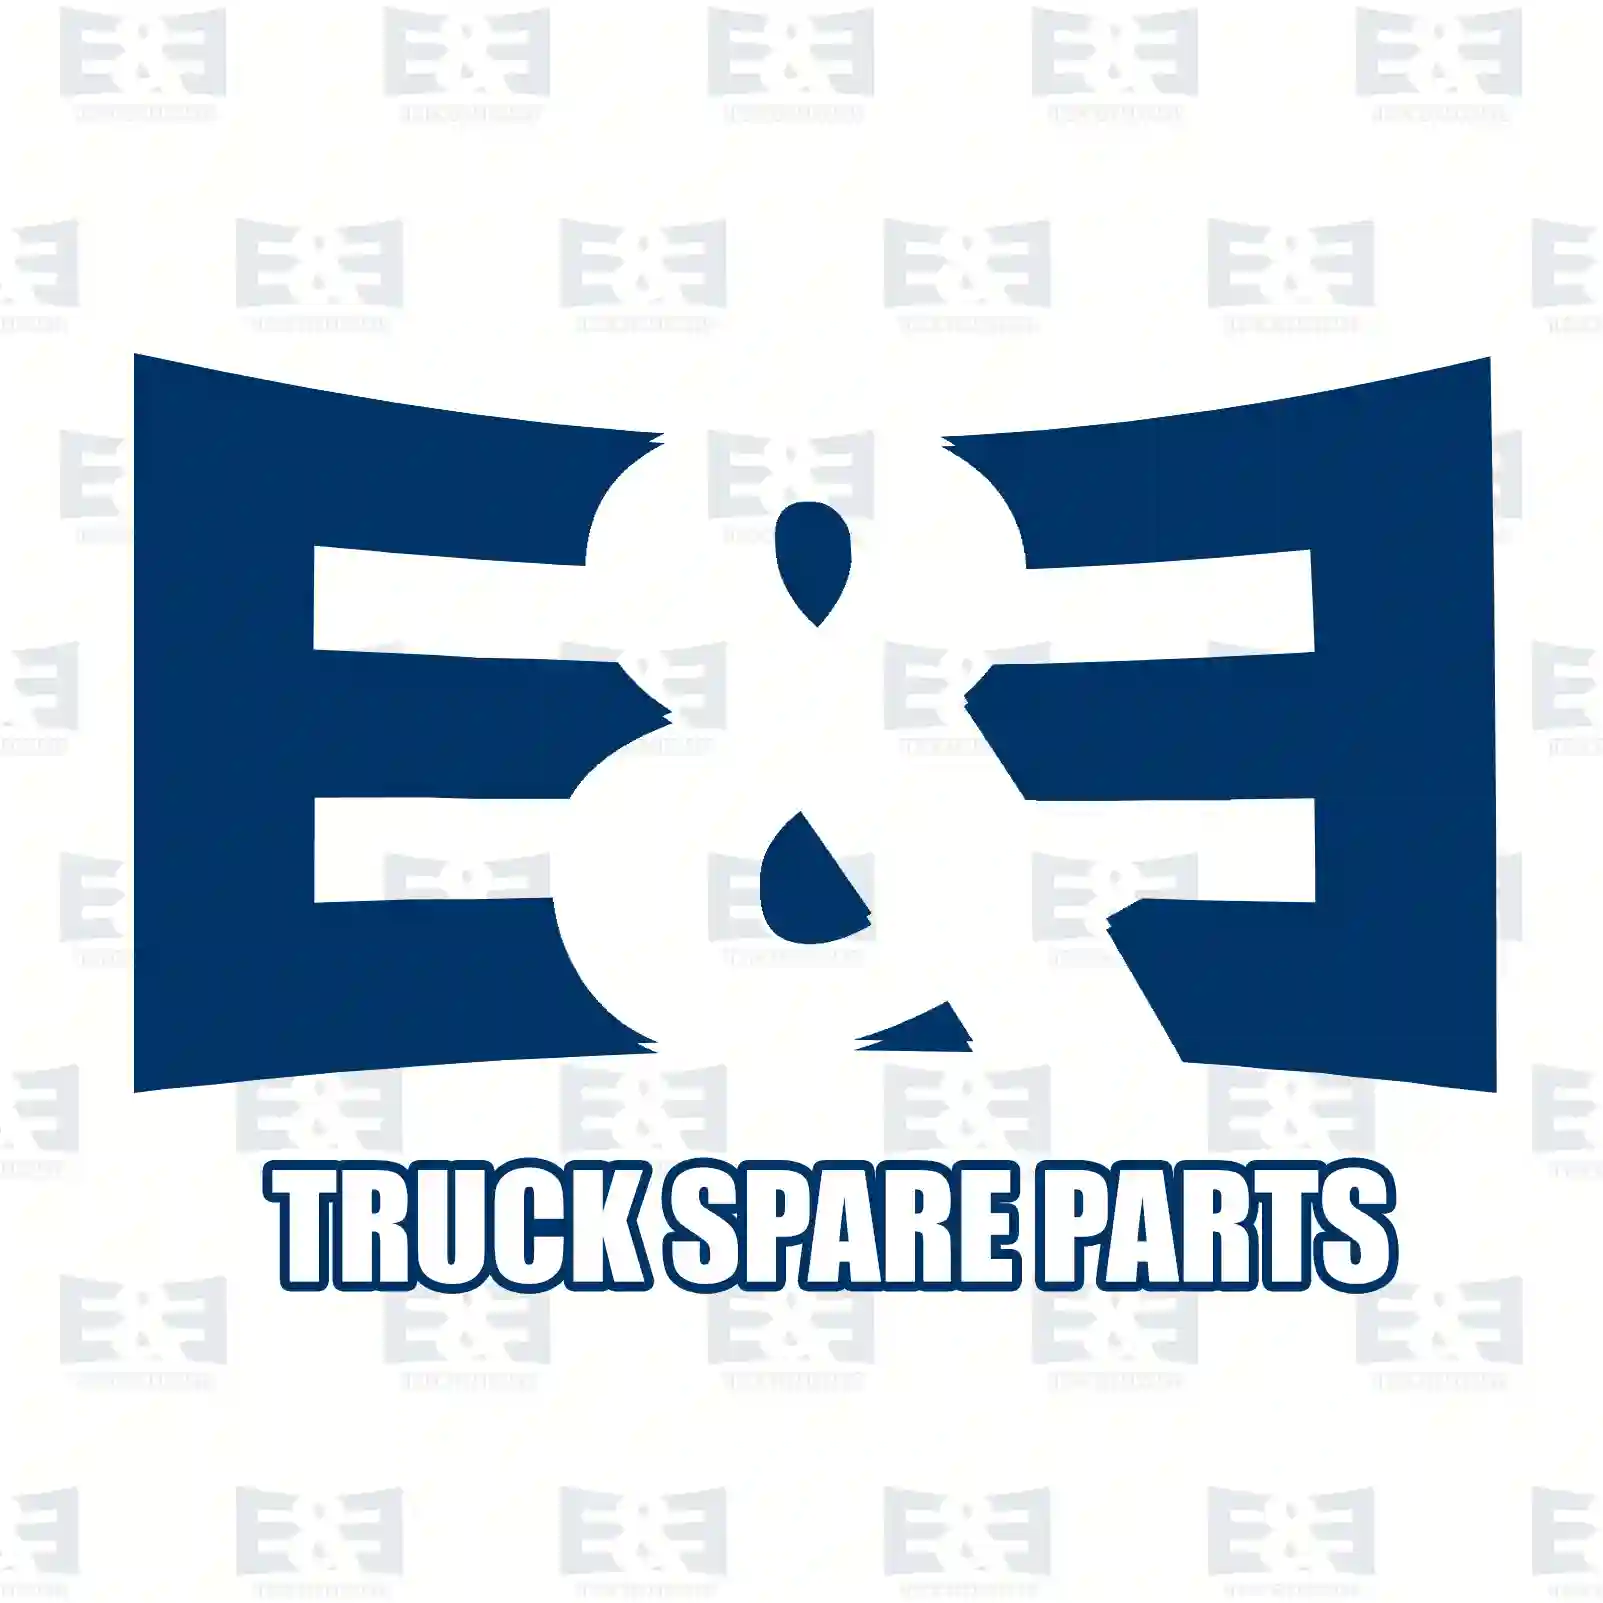 Spoilerset, 2E2289683, 20391581, ZG61121-0008 ||  2E2289683 E&E Truck Spare Parts | Truck Spare Parts, Auotomotive Spare Parts Spoilerset, 2E2289683, 20391581, ZG61121-0008 ||  2E2289683 E&E Truck Spare Parts | Truck Spare Parts, Auotomotive Spare Parts